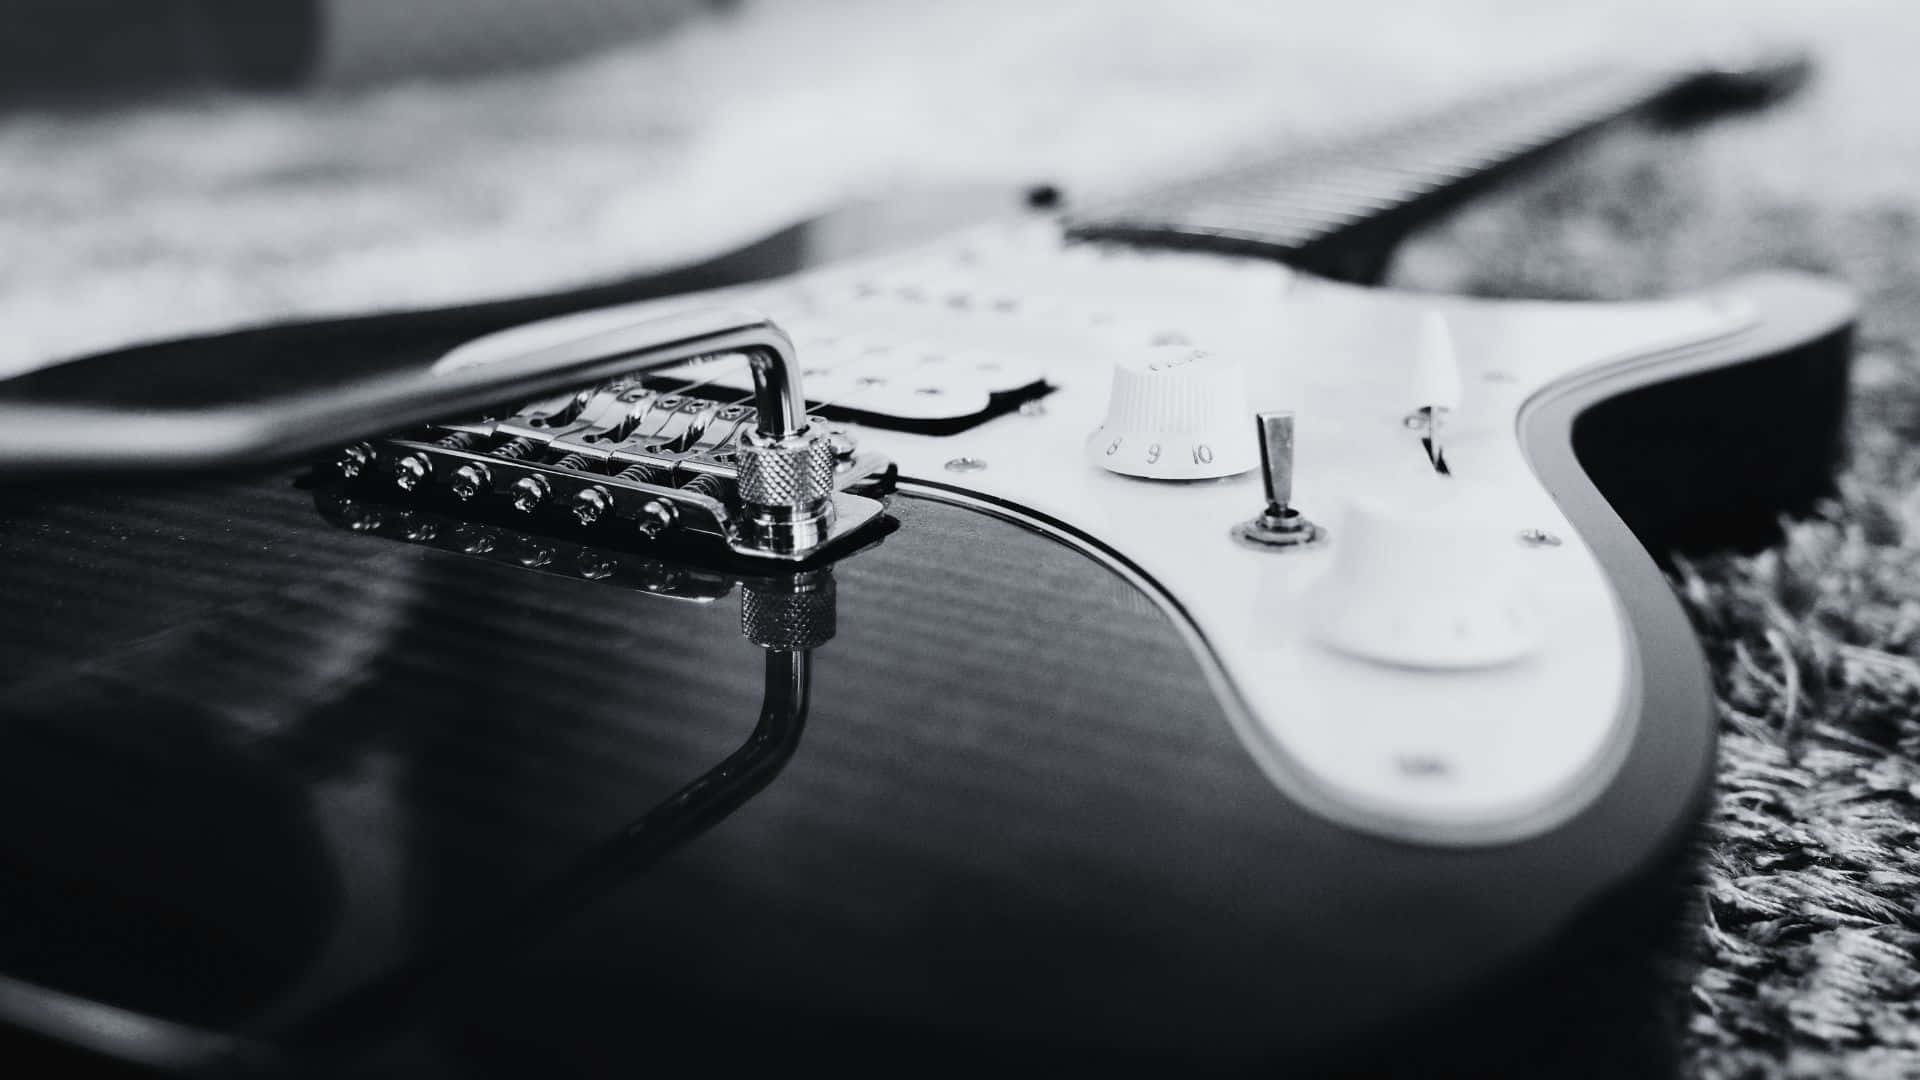 Fondode Pantalla: Guitarra En Blanco Y Negro. Fondo de pantalla